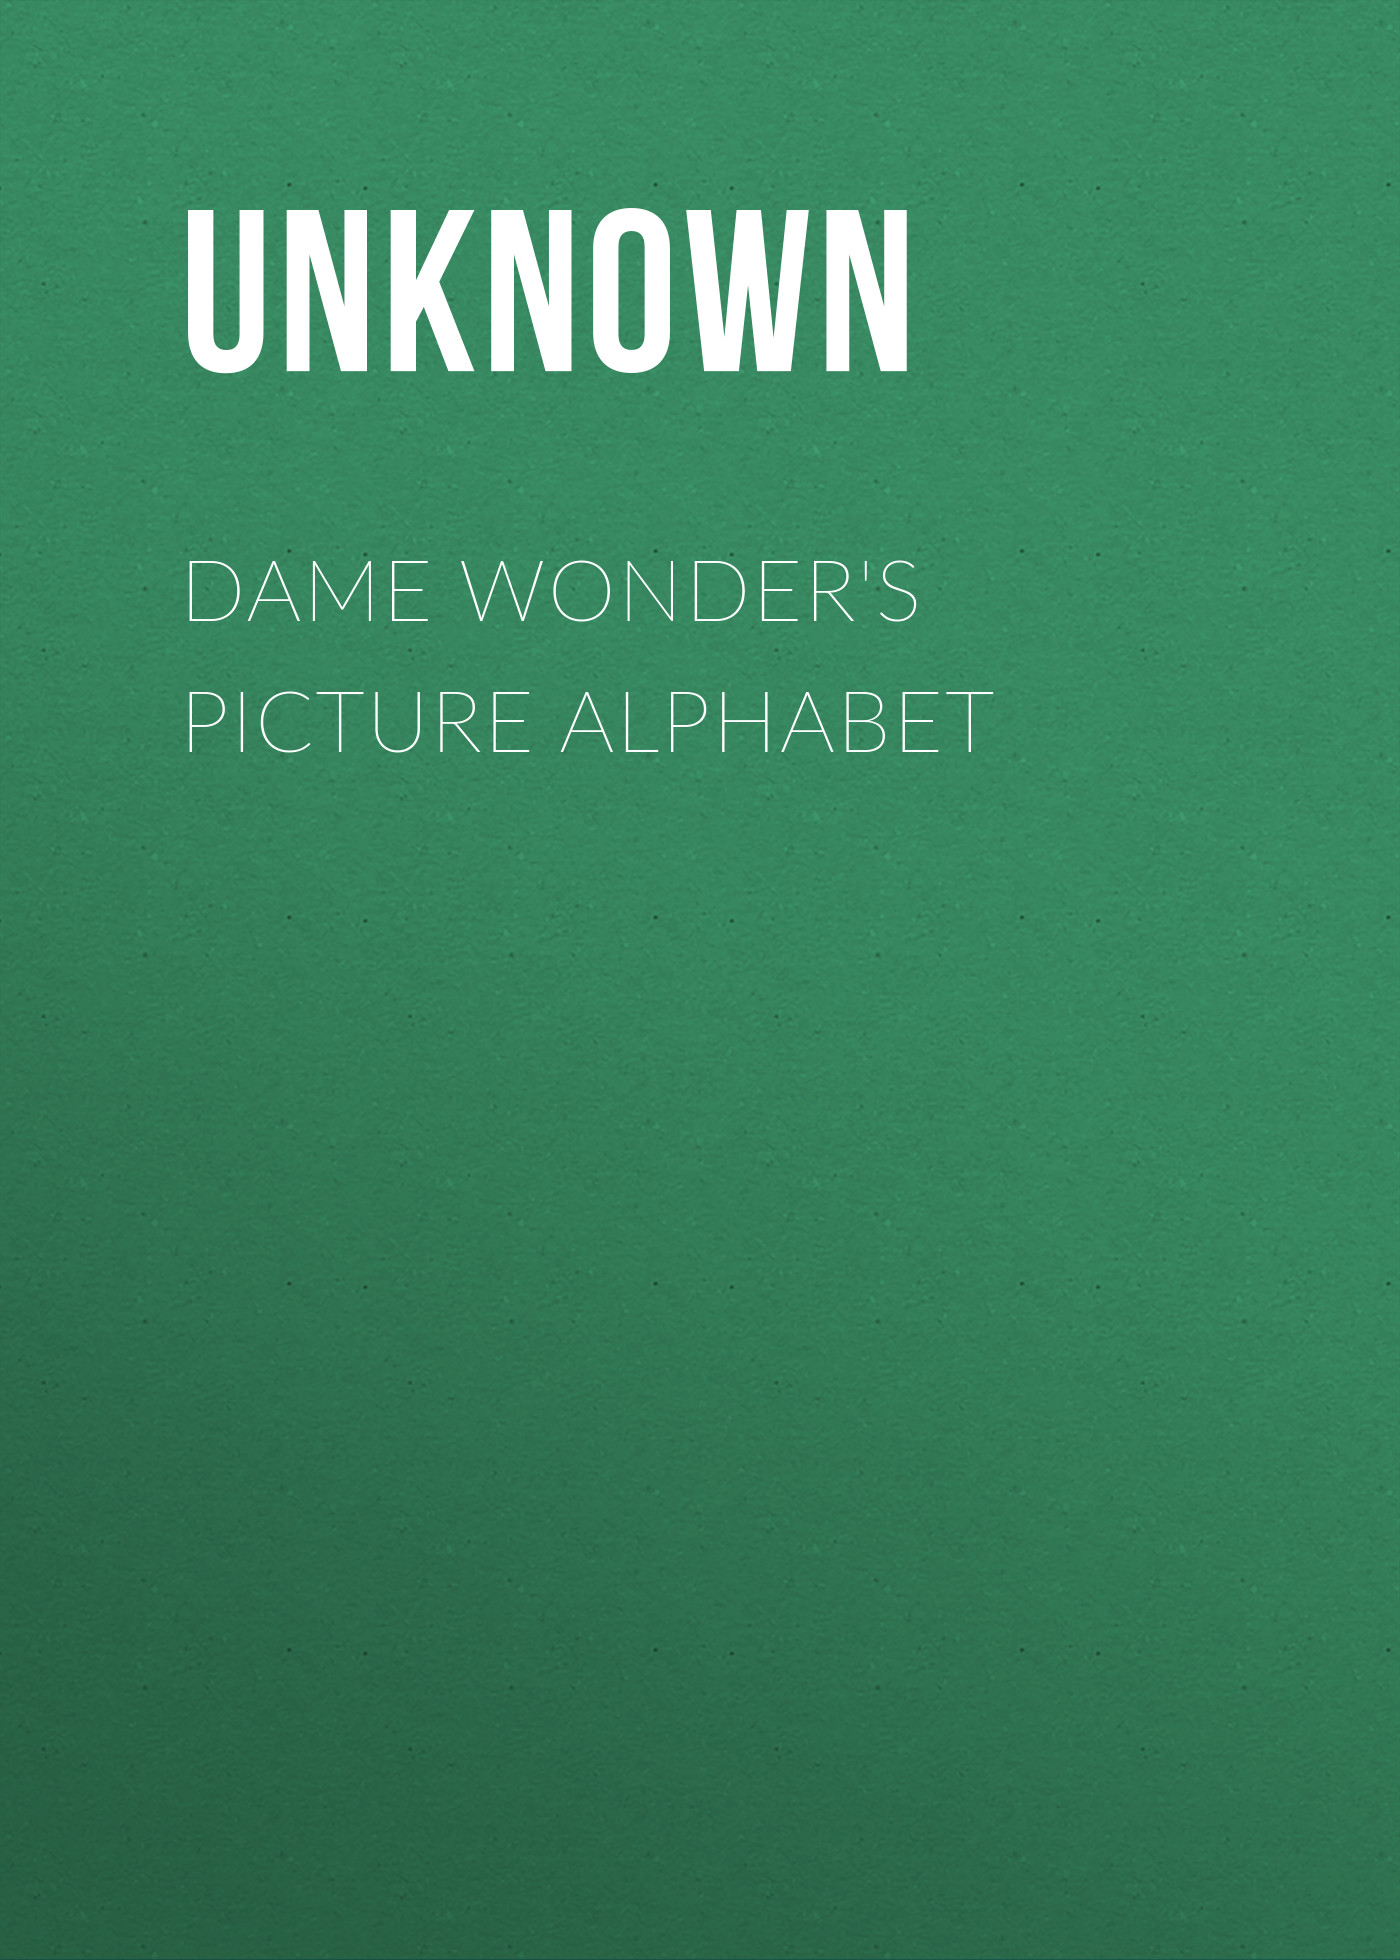 Dame Wonder's Picture Alphabet